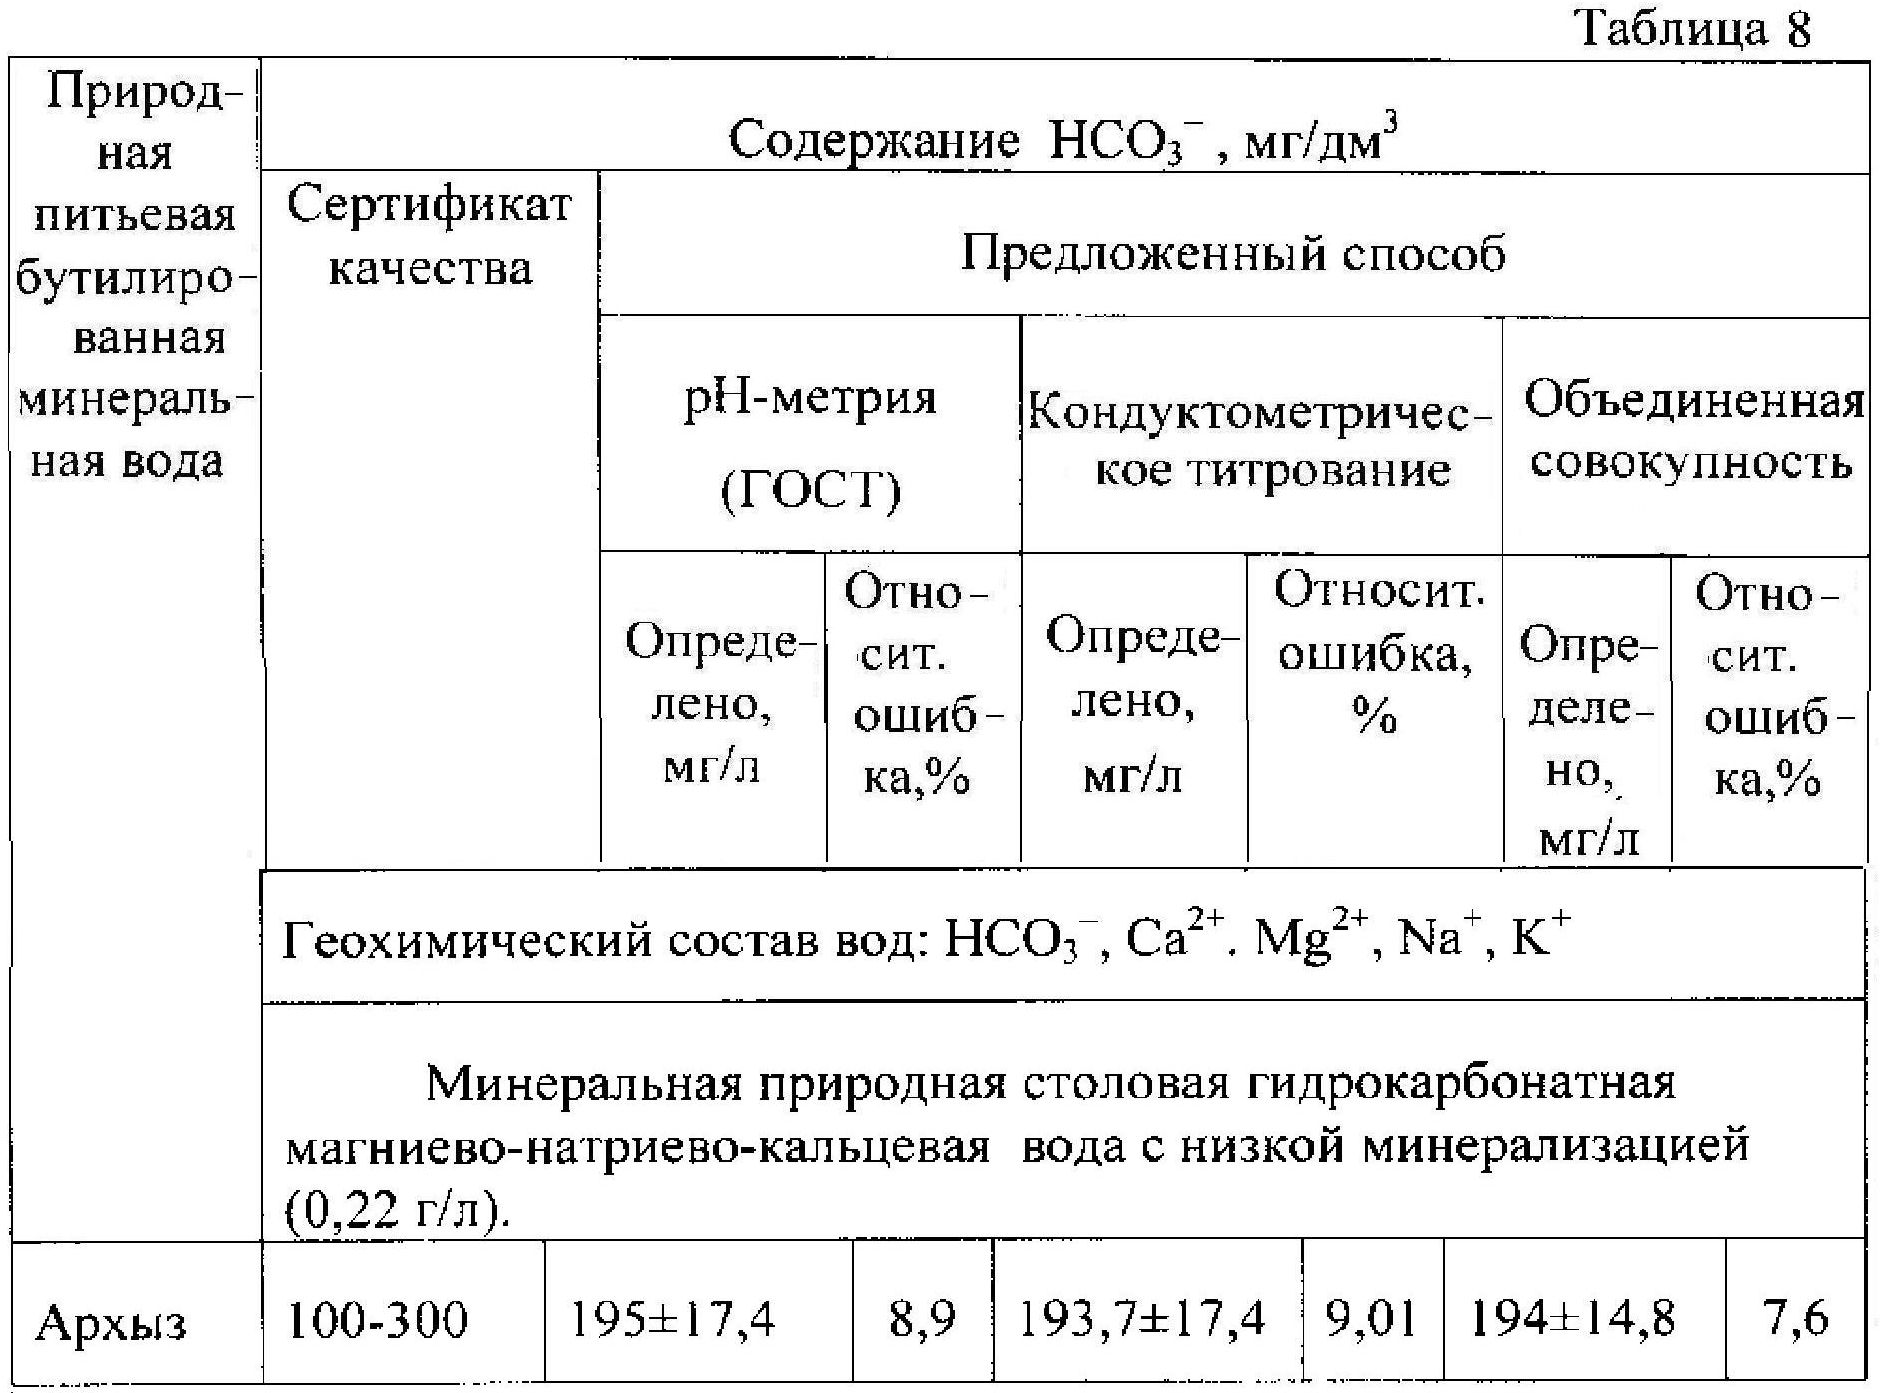 Титрование карбонатов и гидрокарбонатов. Титрование смеси карбоната и гидрокарбоната. Гидрокарбонаты таблица. Кислотно-основное кондуктометрическое титрование.